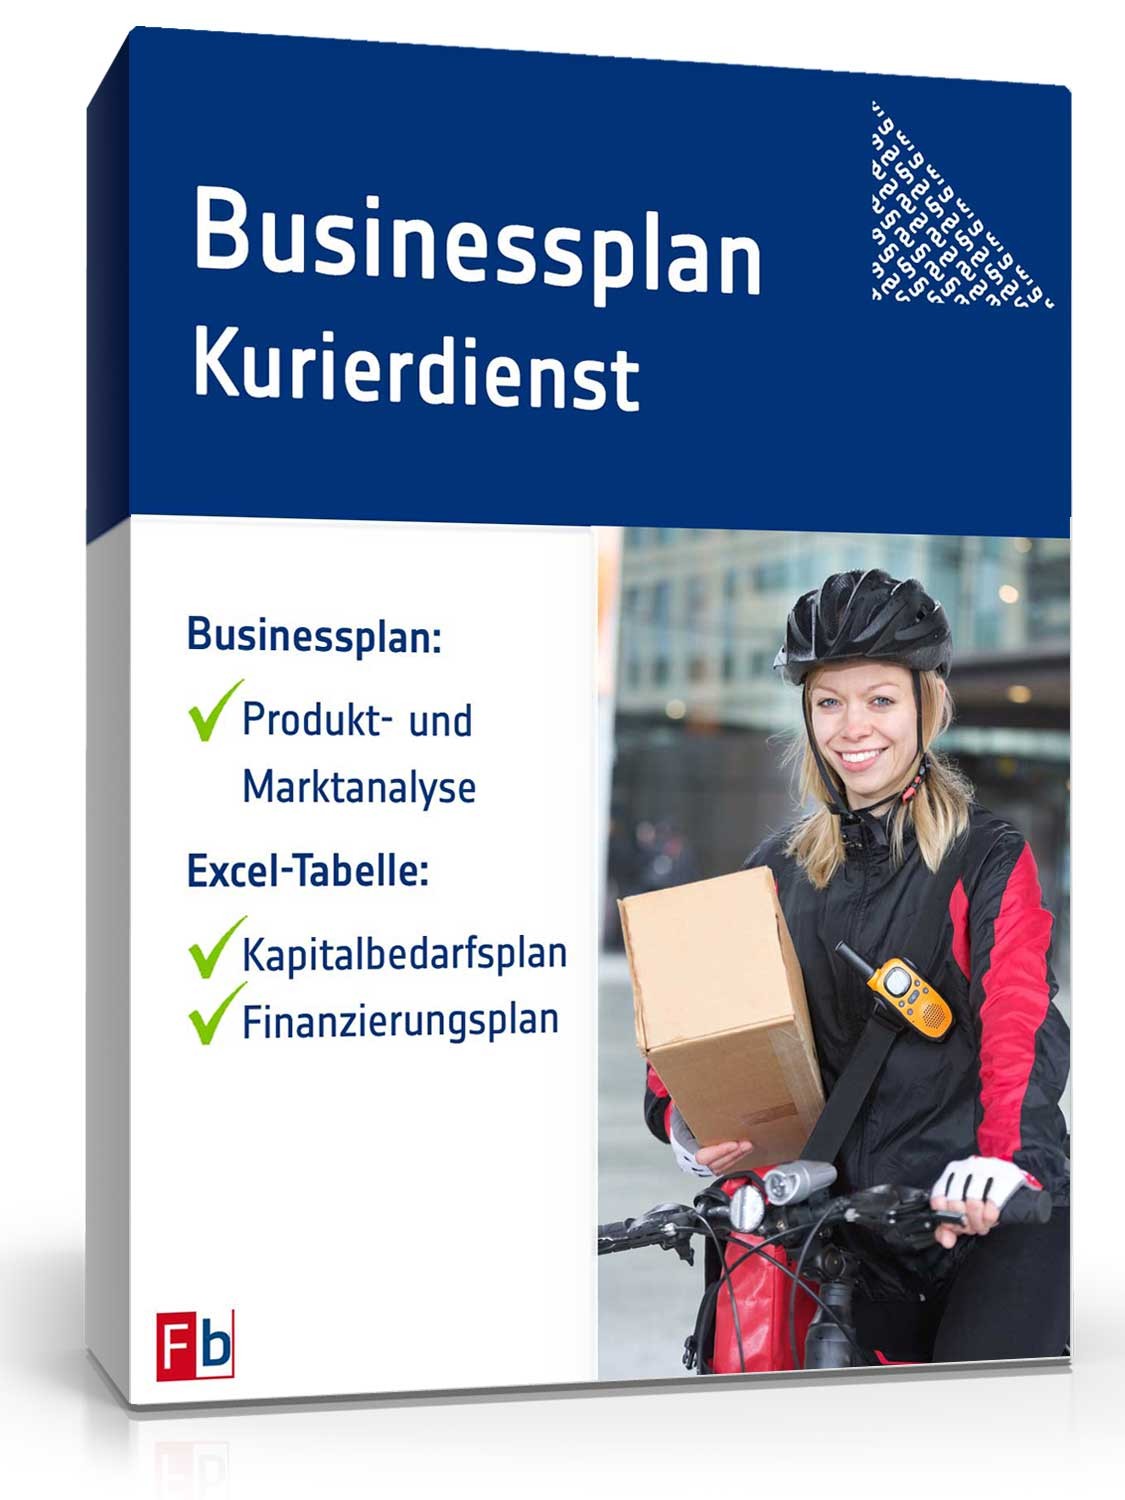 Hauptbild des Produkts: Businessplan Kurierdienst